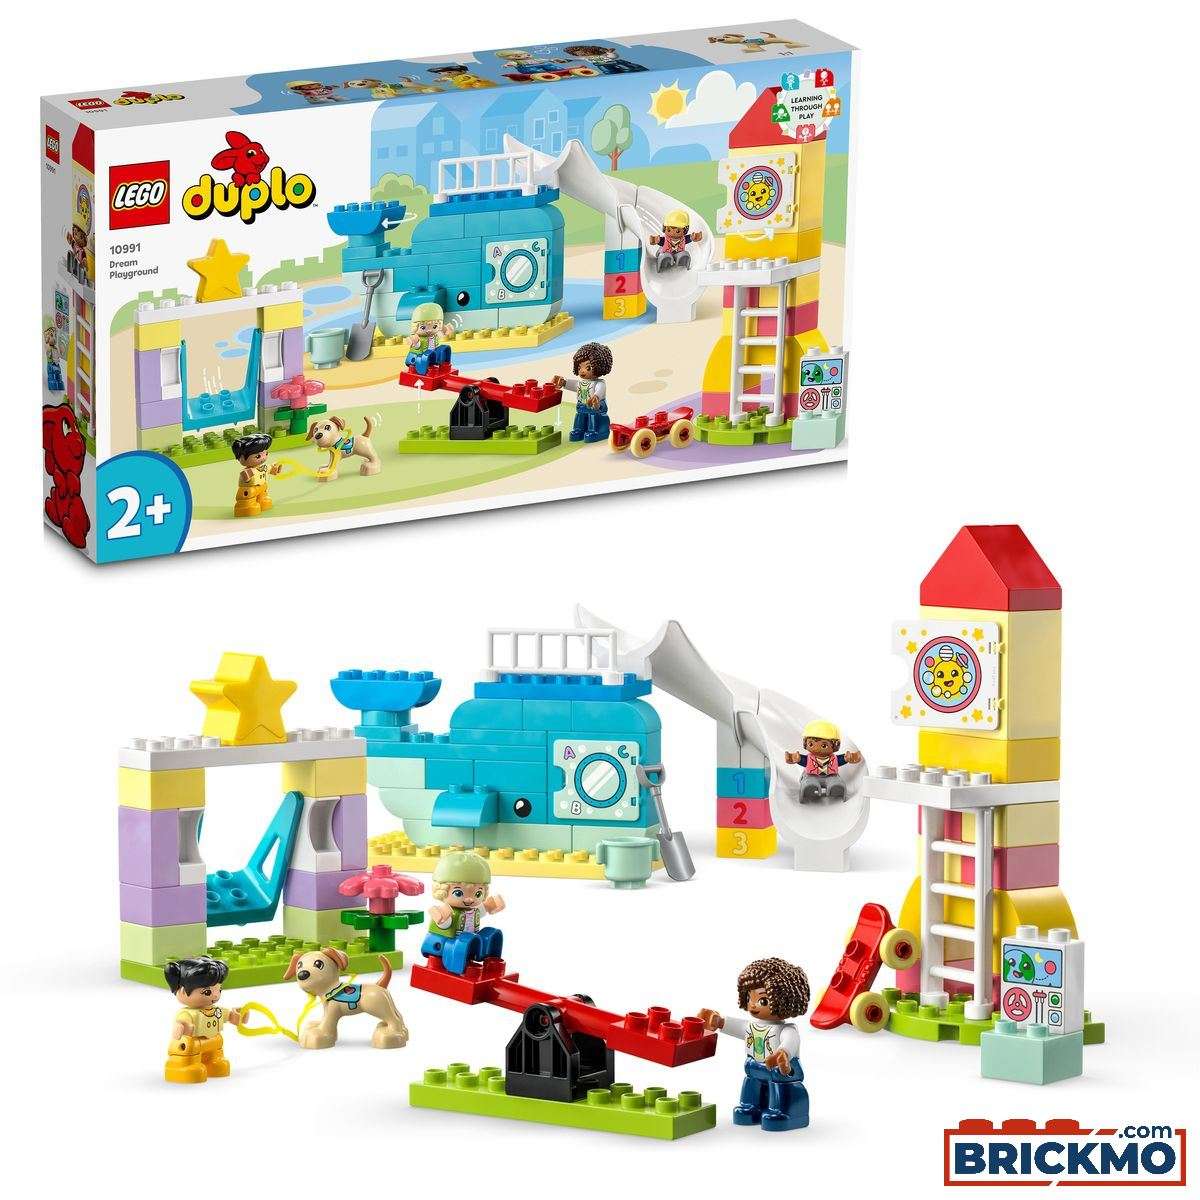 LEGO Duplo 10991 Gran Parque de Juegos 10991